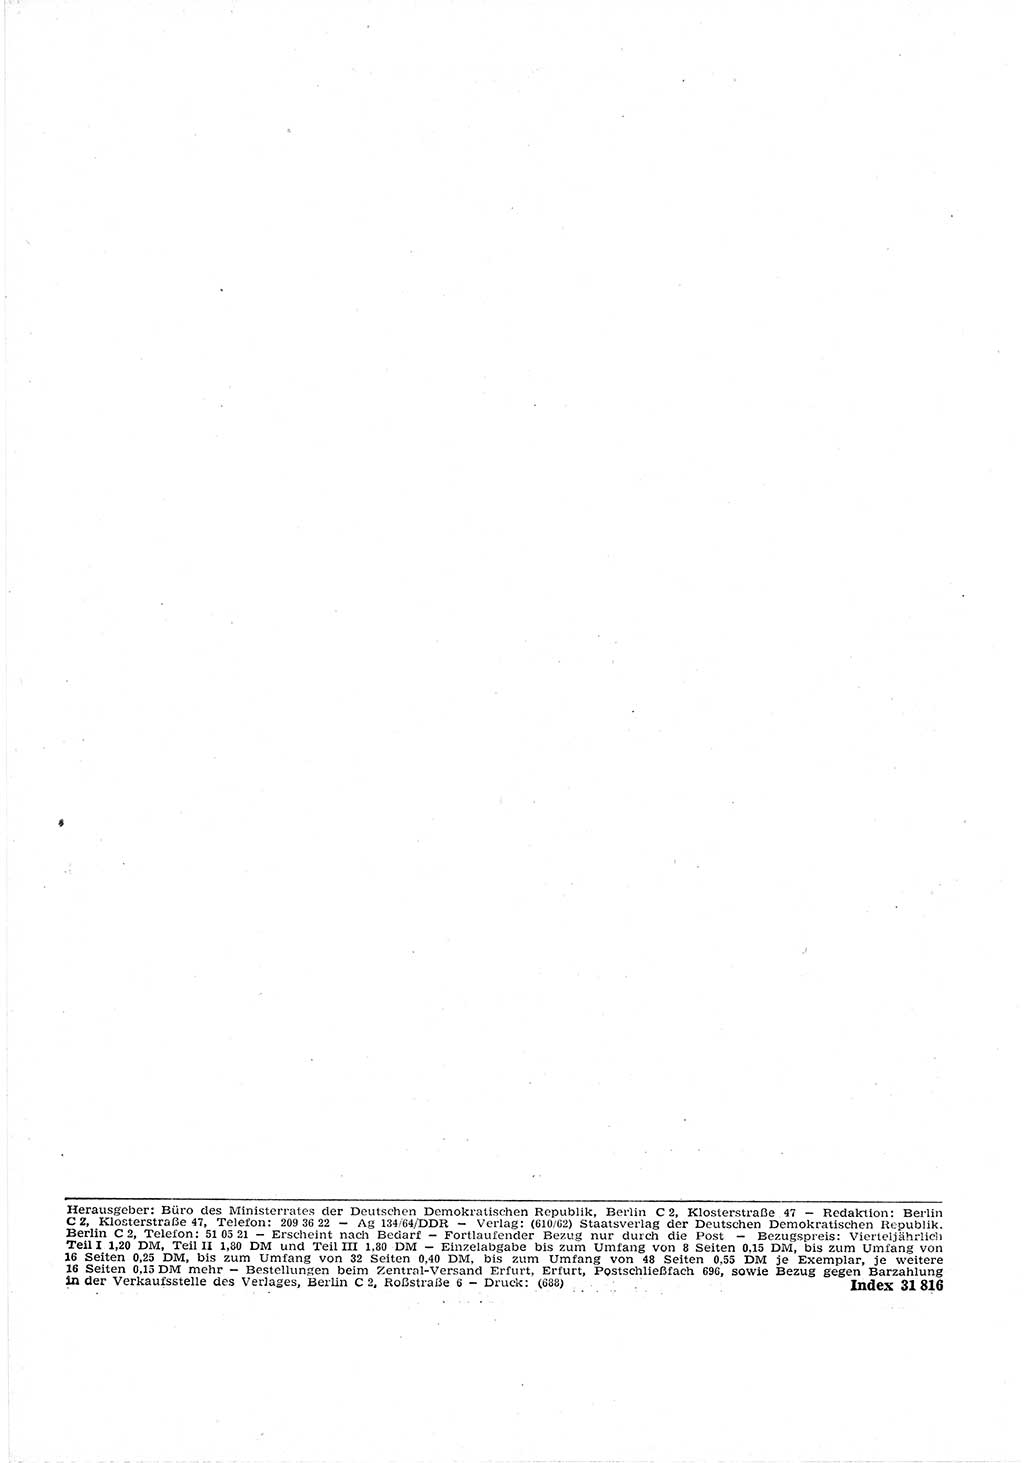 Gesetzblatt (GBl.) der Deutschen Demokratischen Republik (DDR) Teil Ⅰ 1964, Seite 112 (GBl. DDR Ⅰ 1964, S. 112)